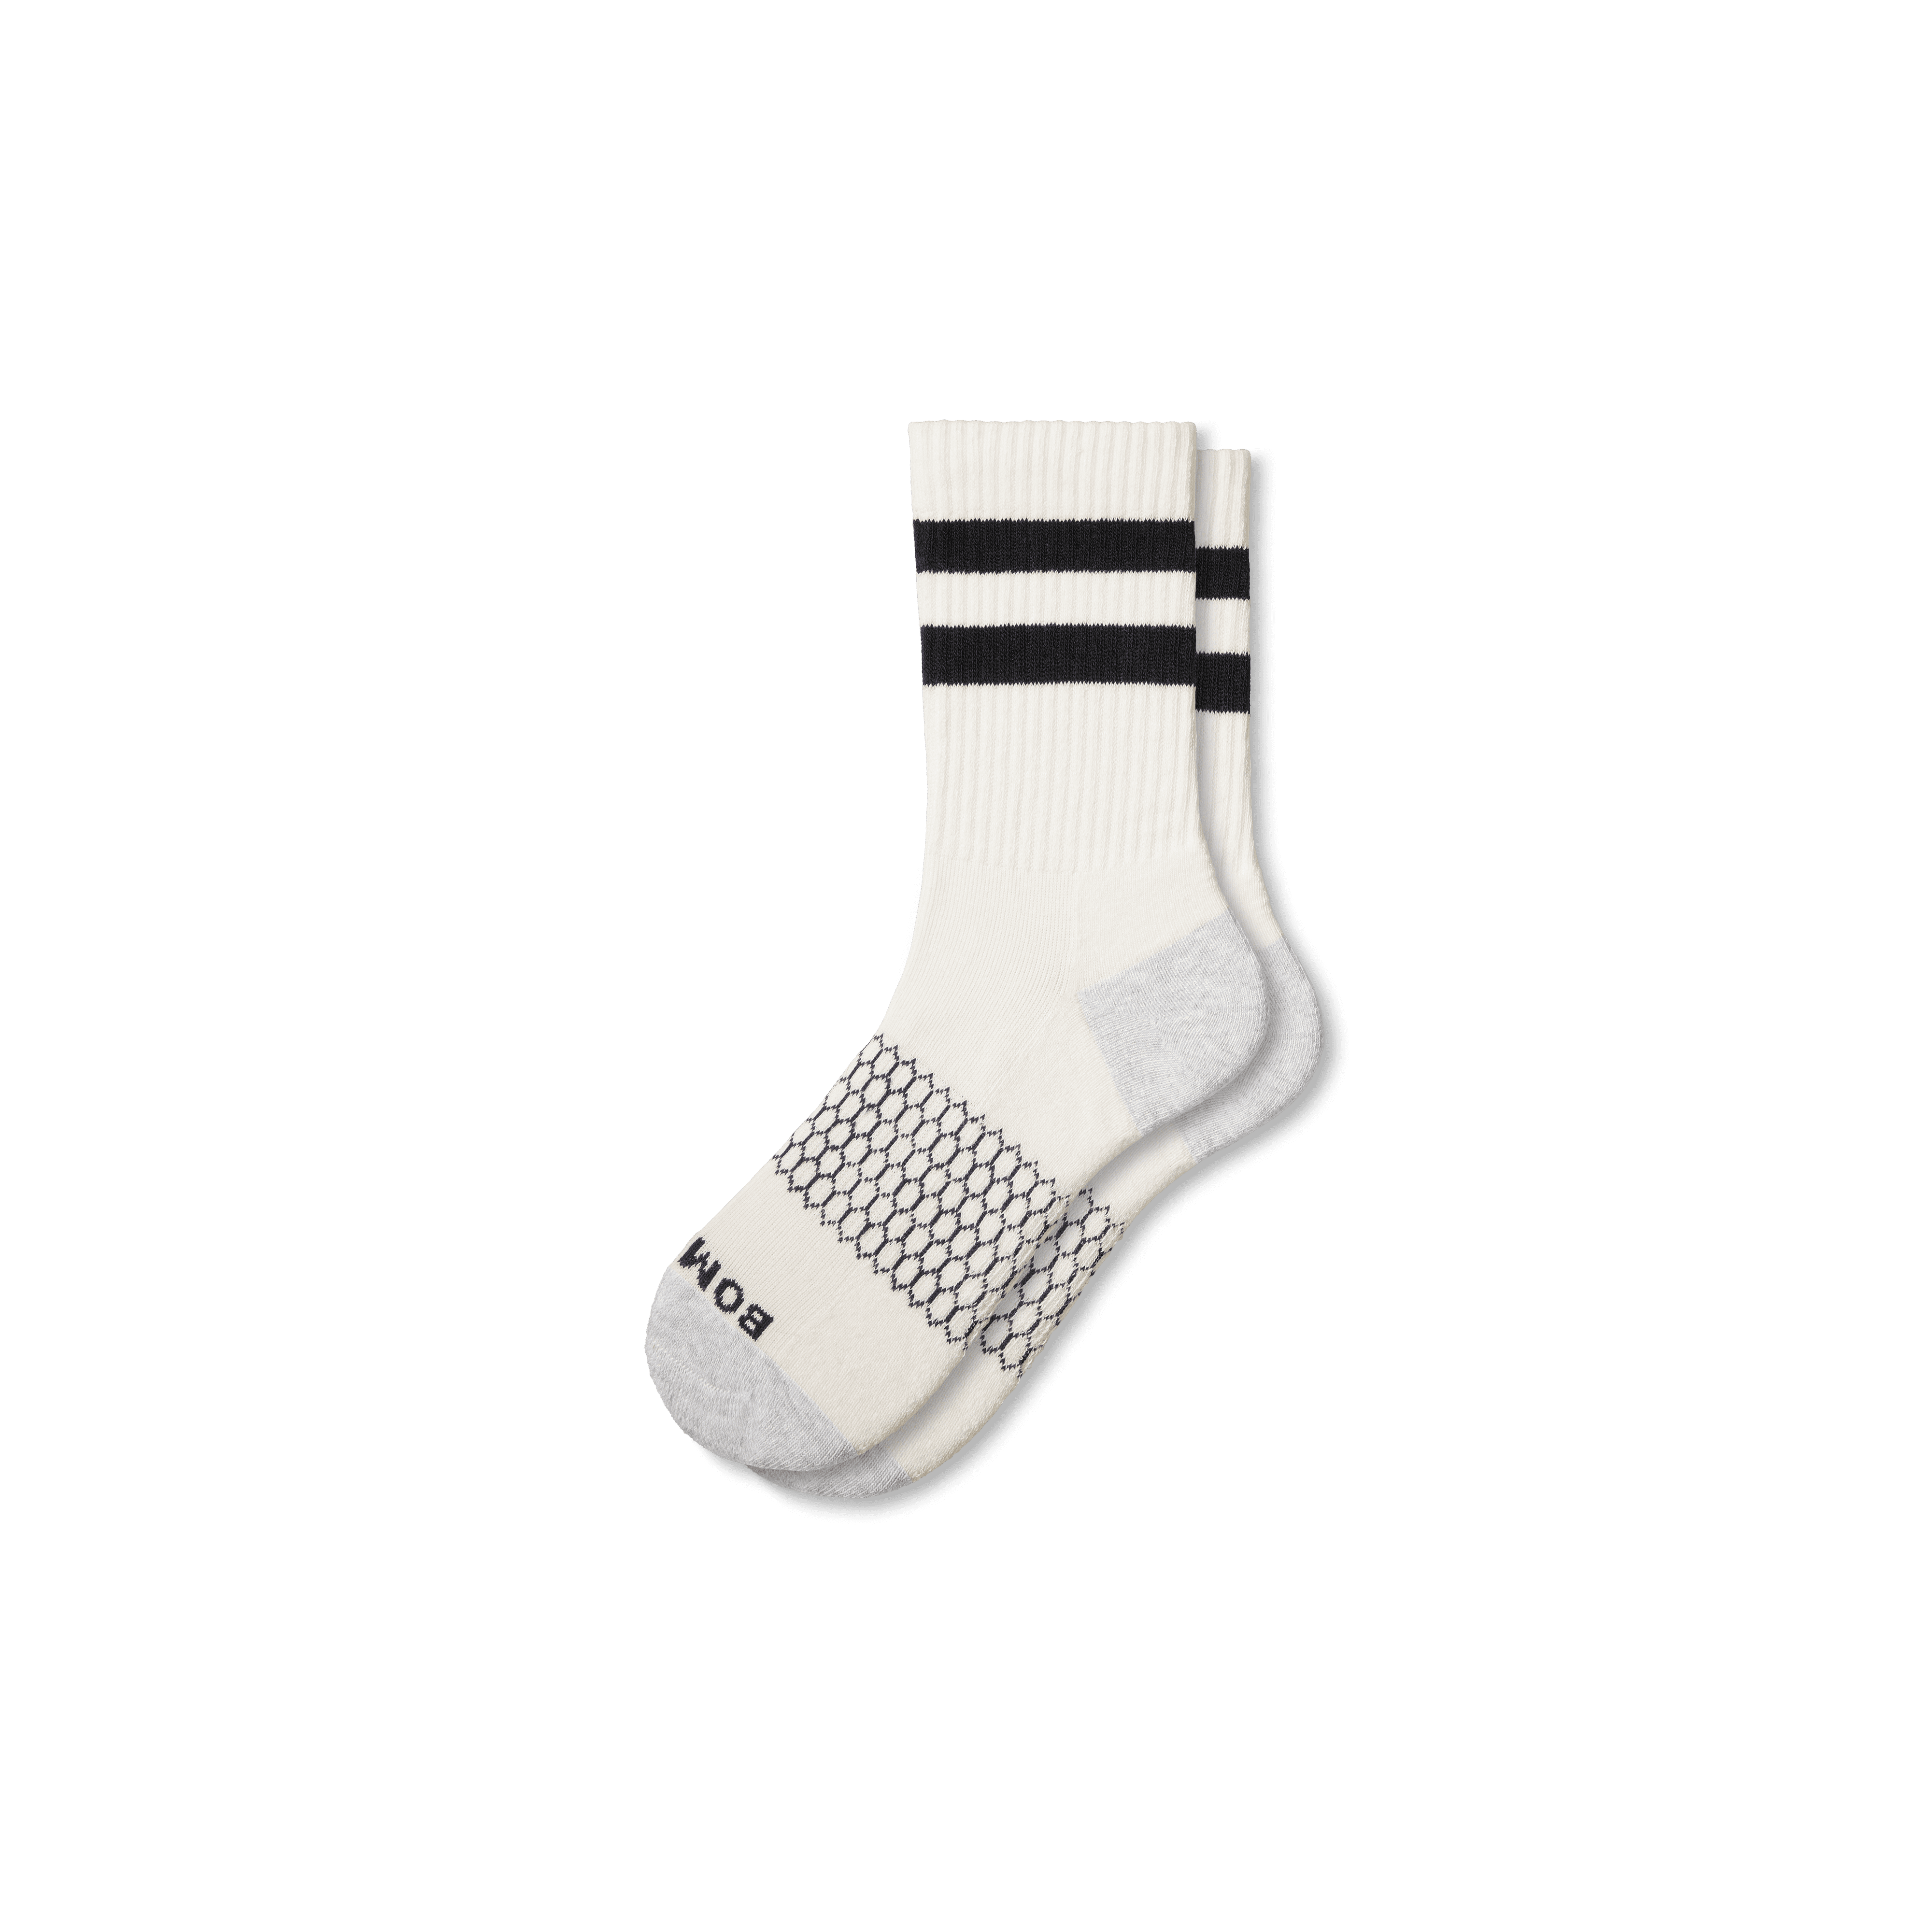 Bombas Vintage Stripes Half Calf Socks In Black